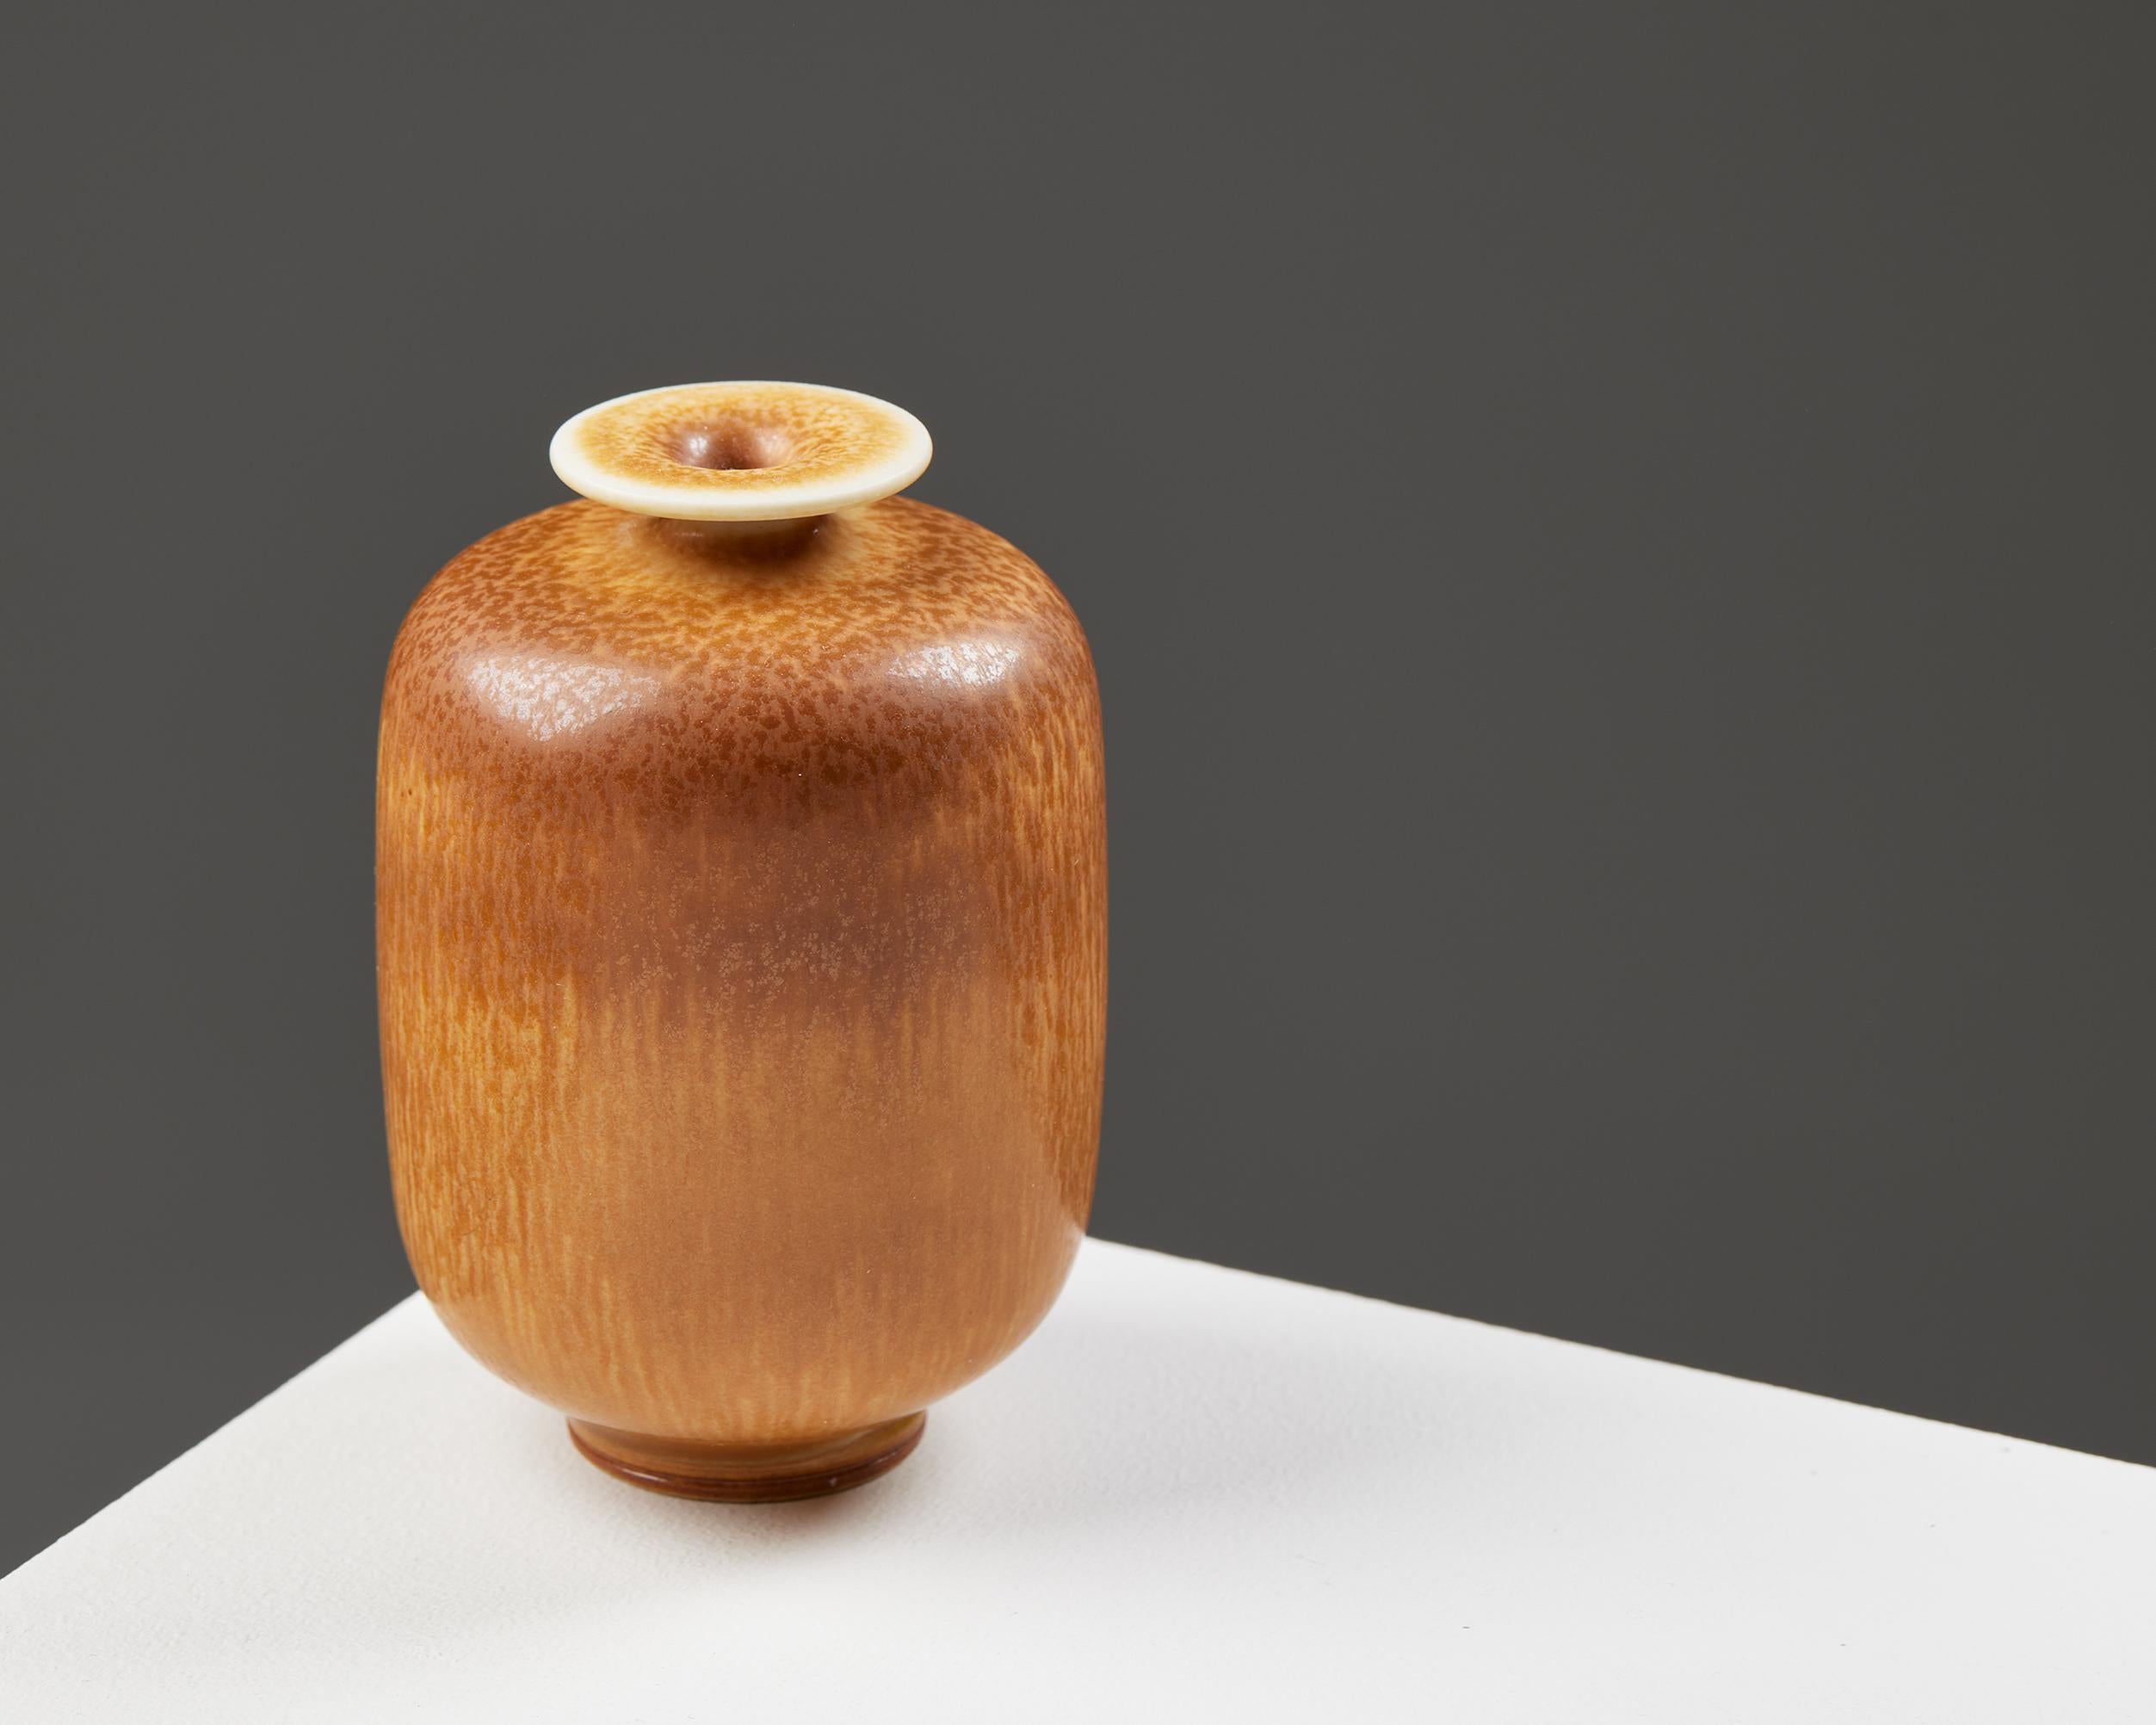 Vase designed by Berndt Friberg for Gustavsberg,
Sweden. 1950s.
Stoneware.

Signed.

H: 9.5 cm / 3 3/4